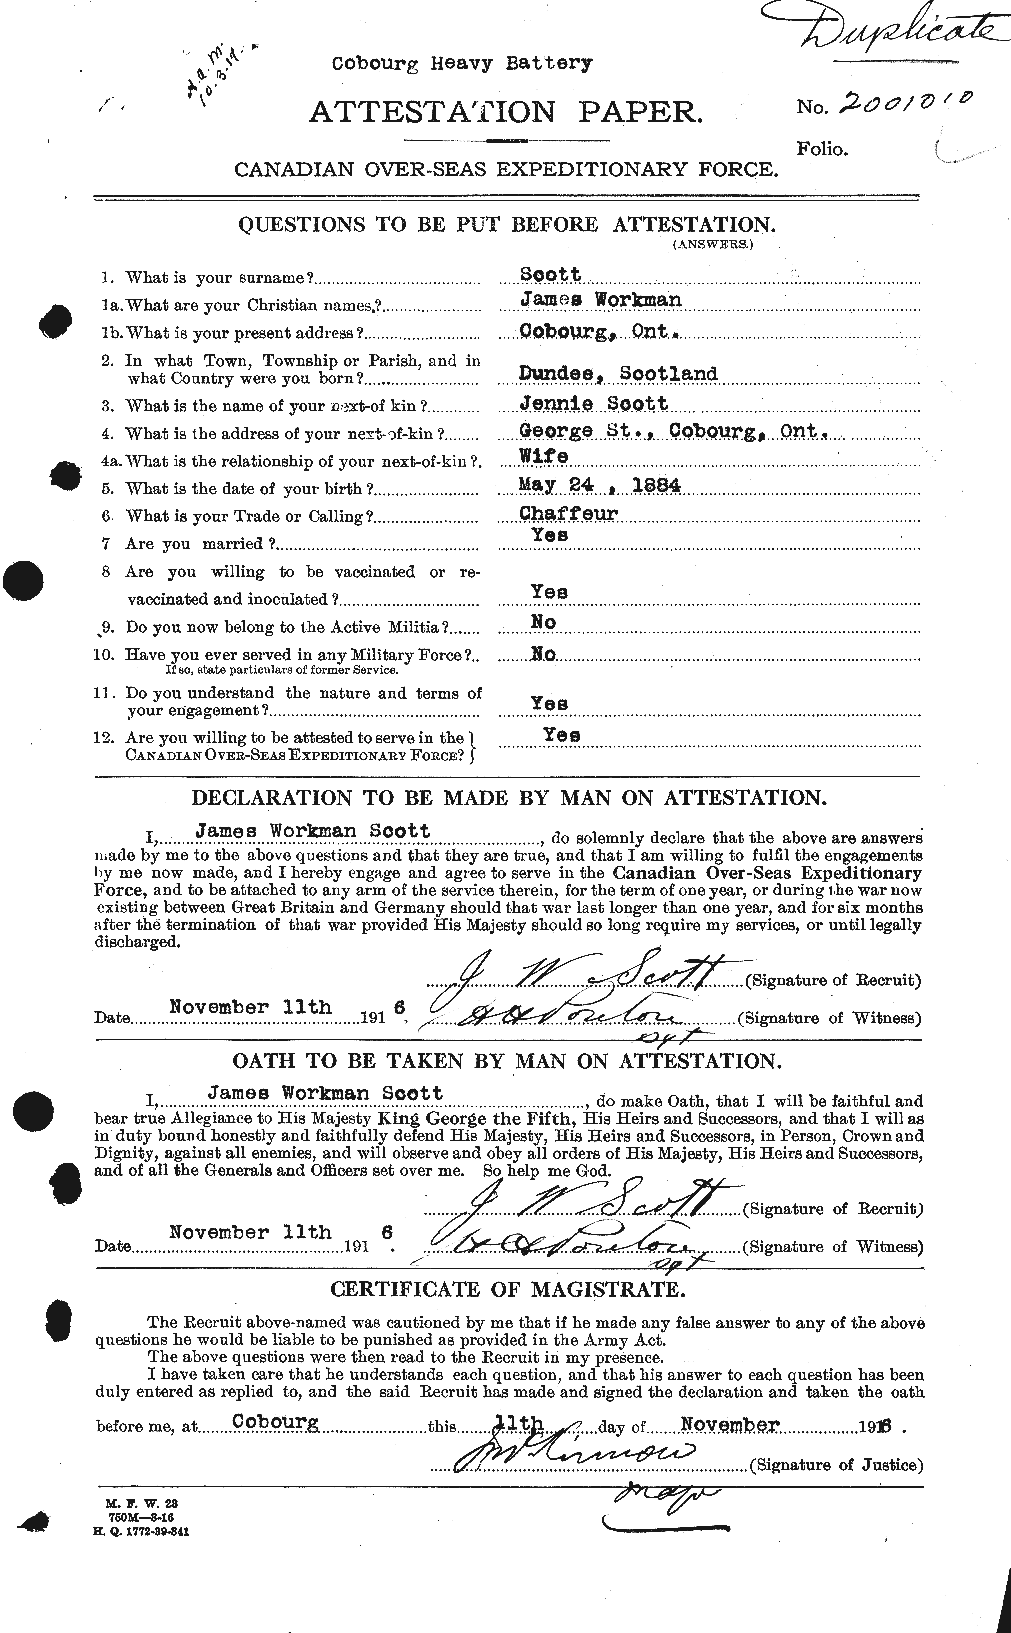 Dossiers du Personnel de la Première Guerre mondiale - CEC 085166a